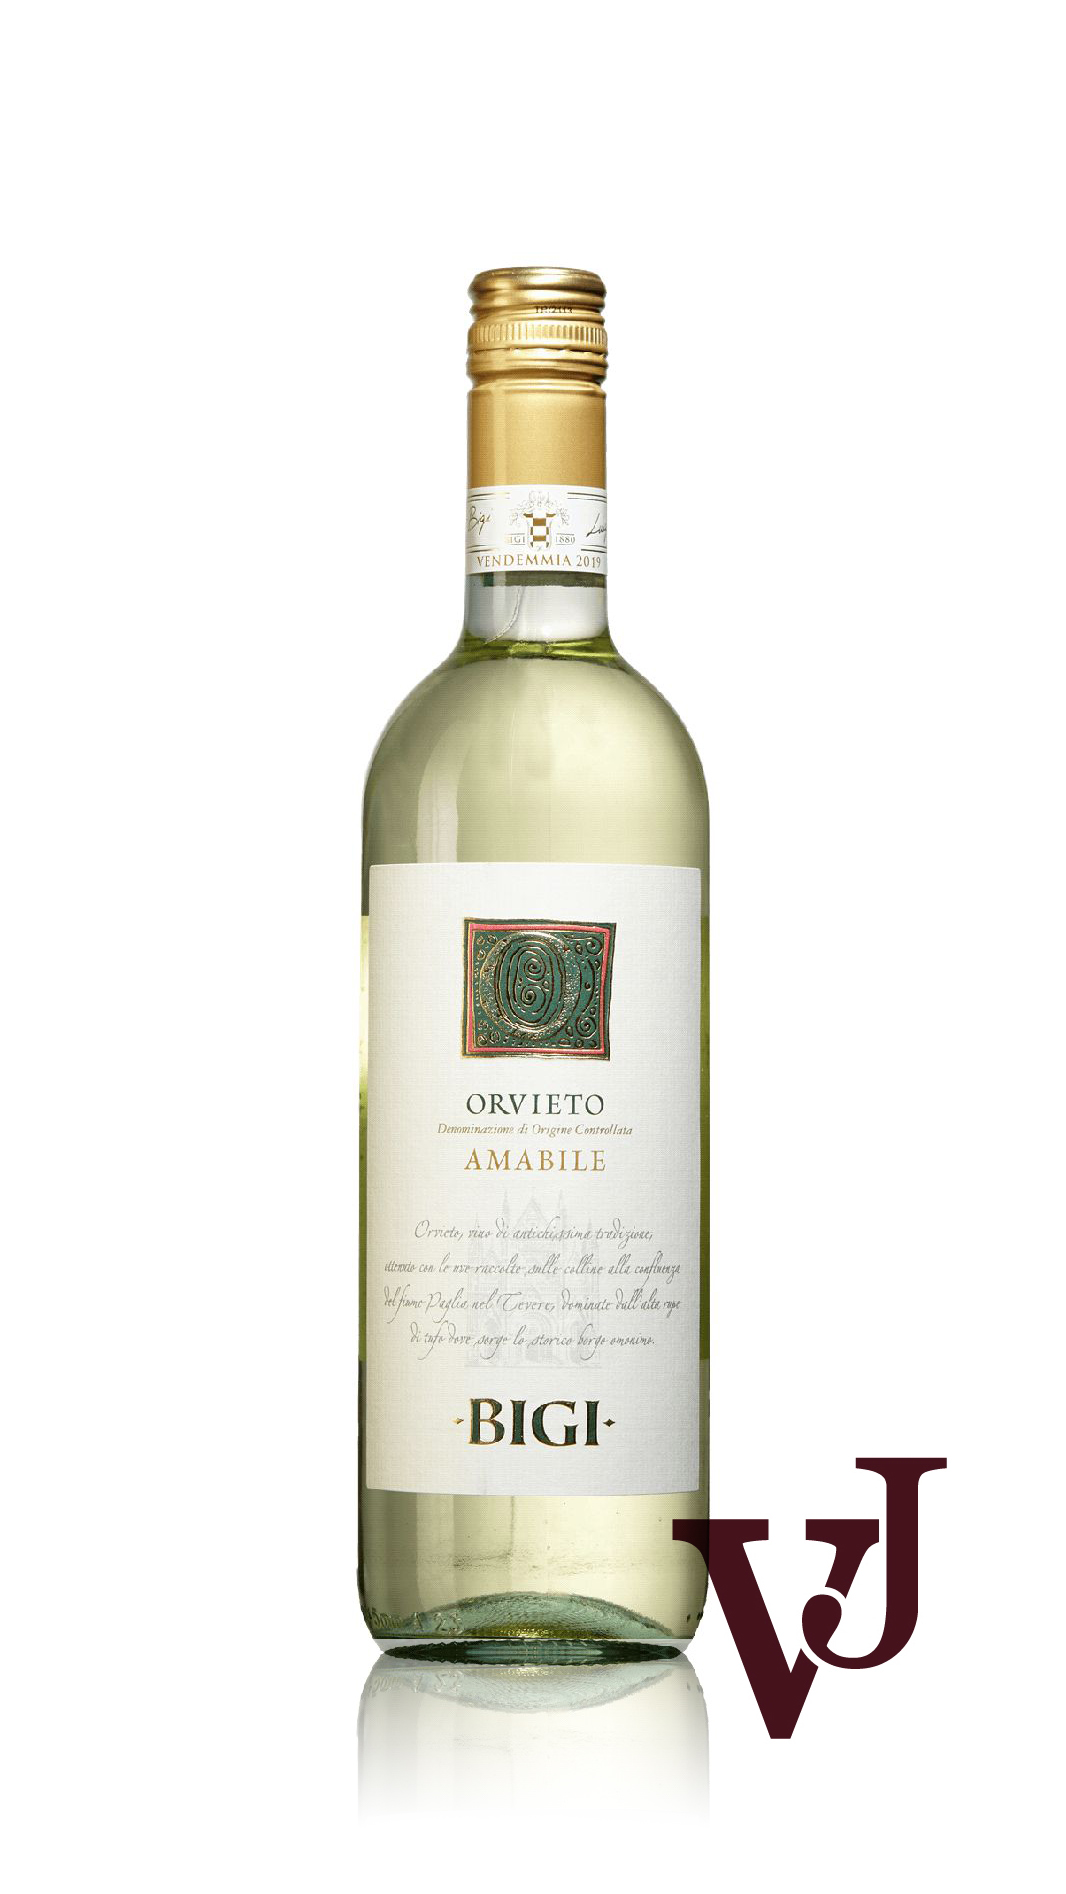 Vitt Vin - Orvieto Amabile artikel nummer 240401 från producenten Bigi från området Italien